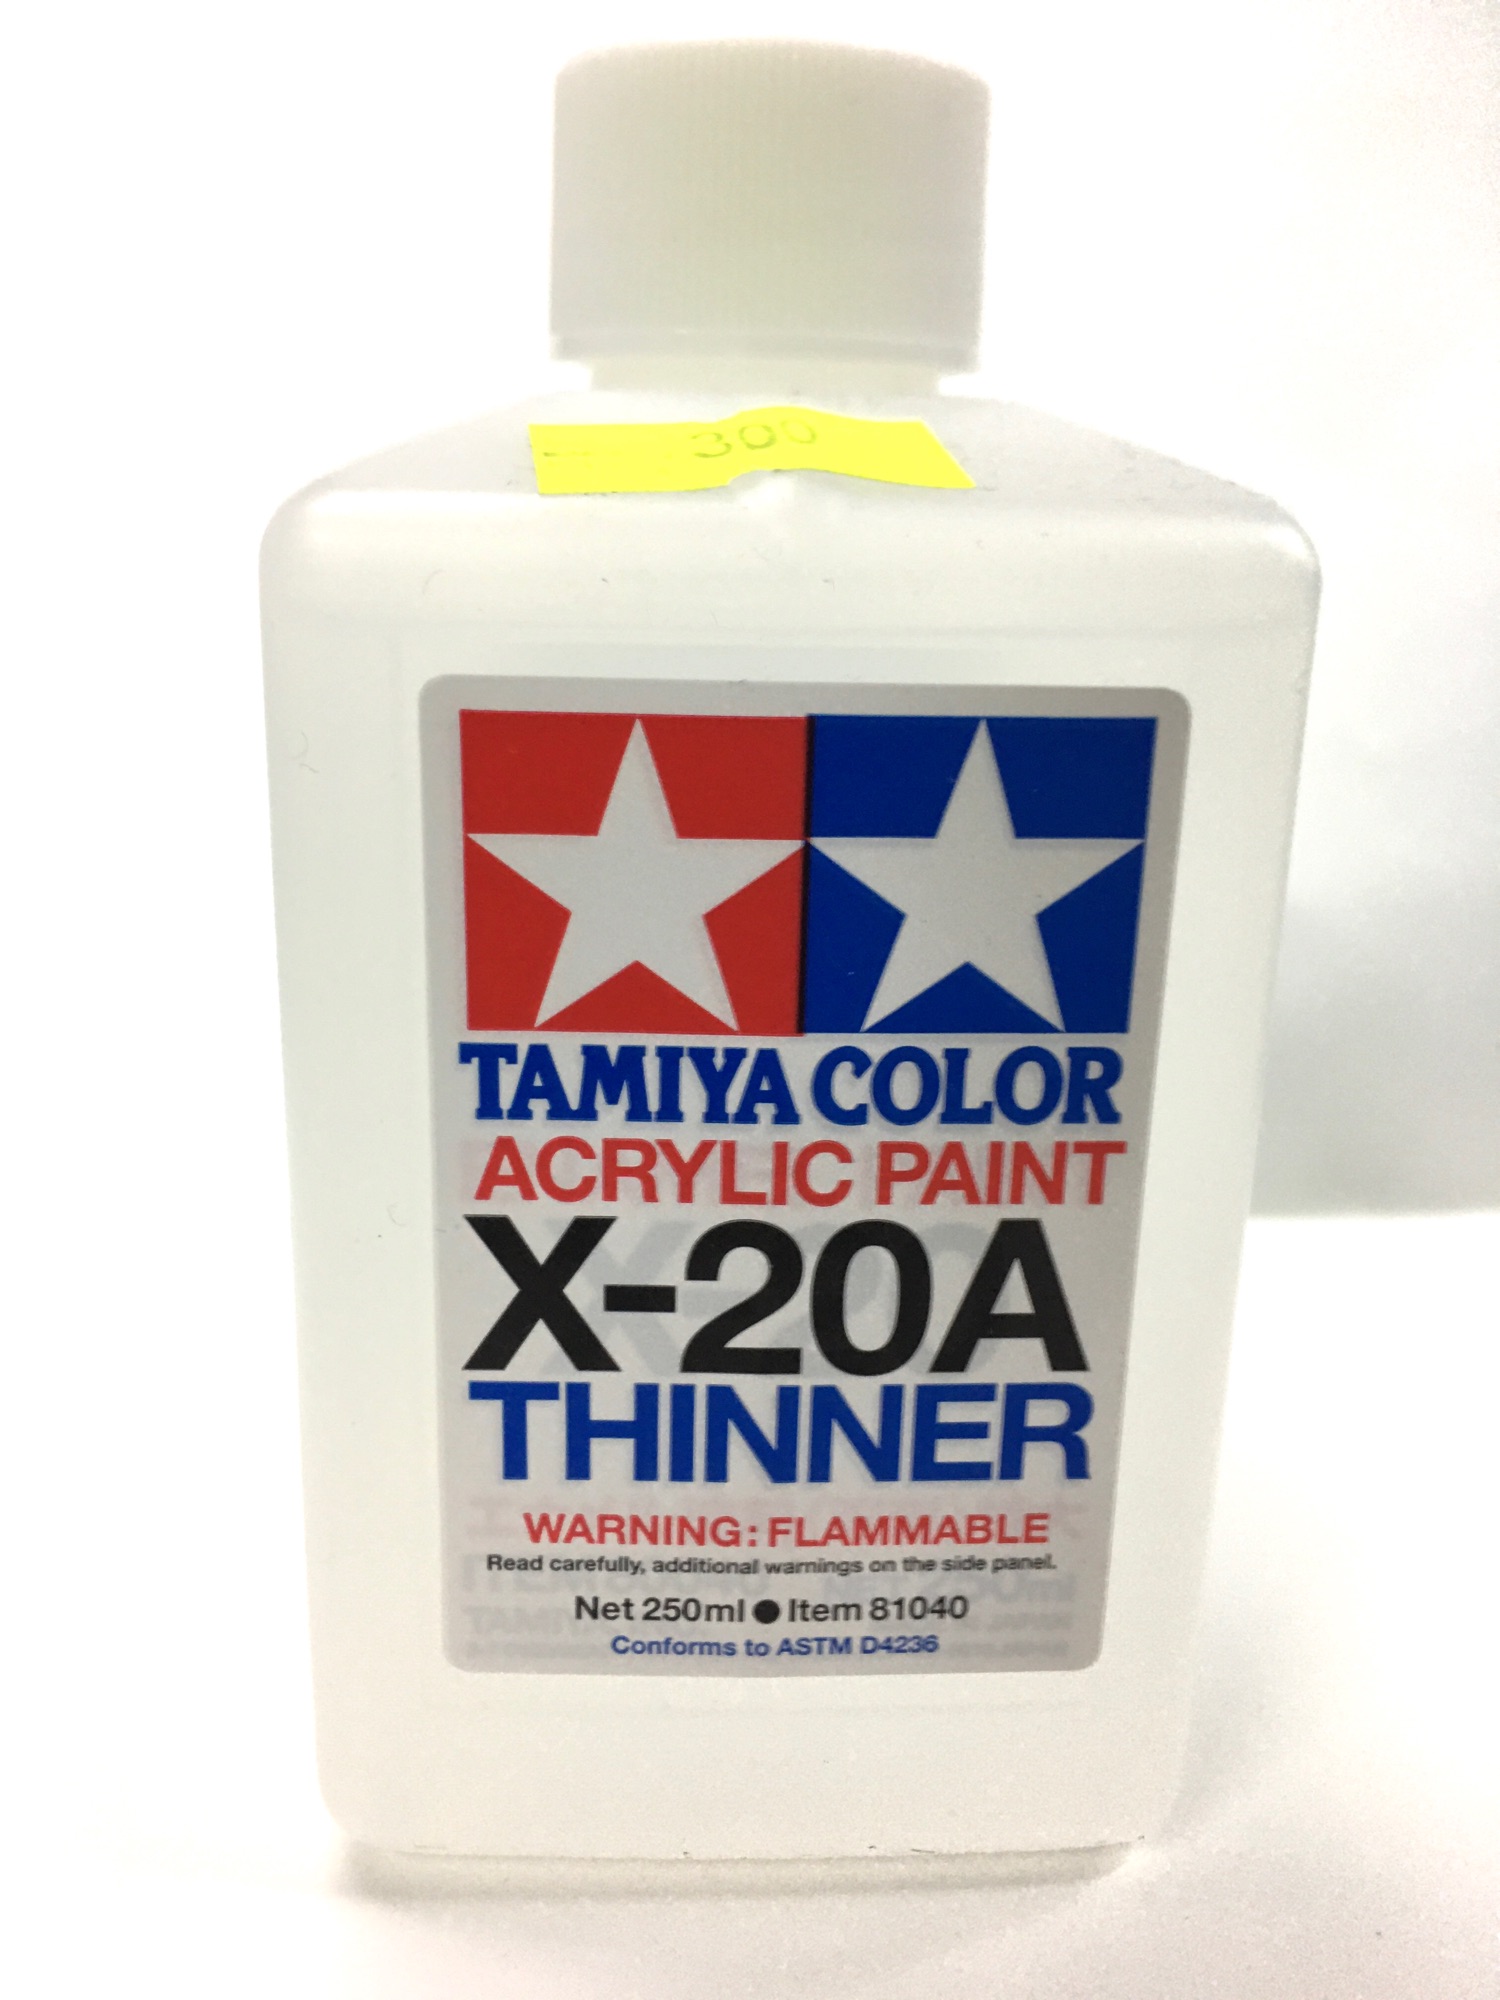 Tamiya Color Acrylic Paint X-20A Thinner